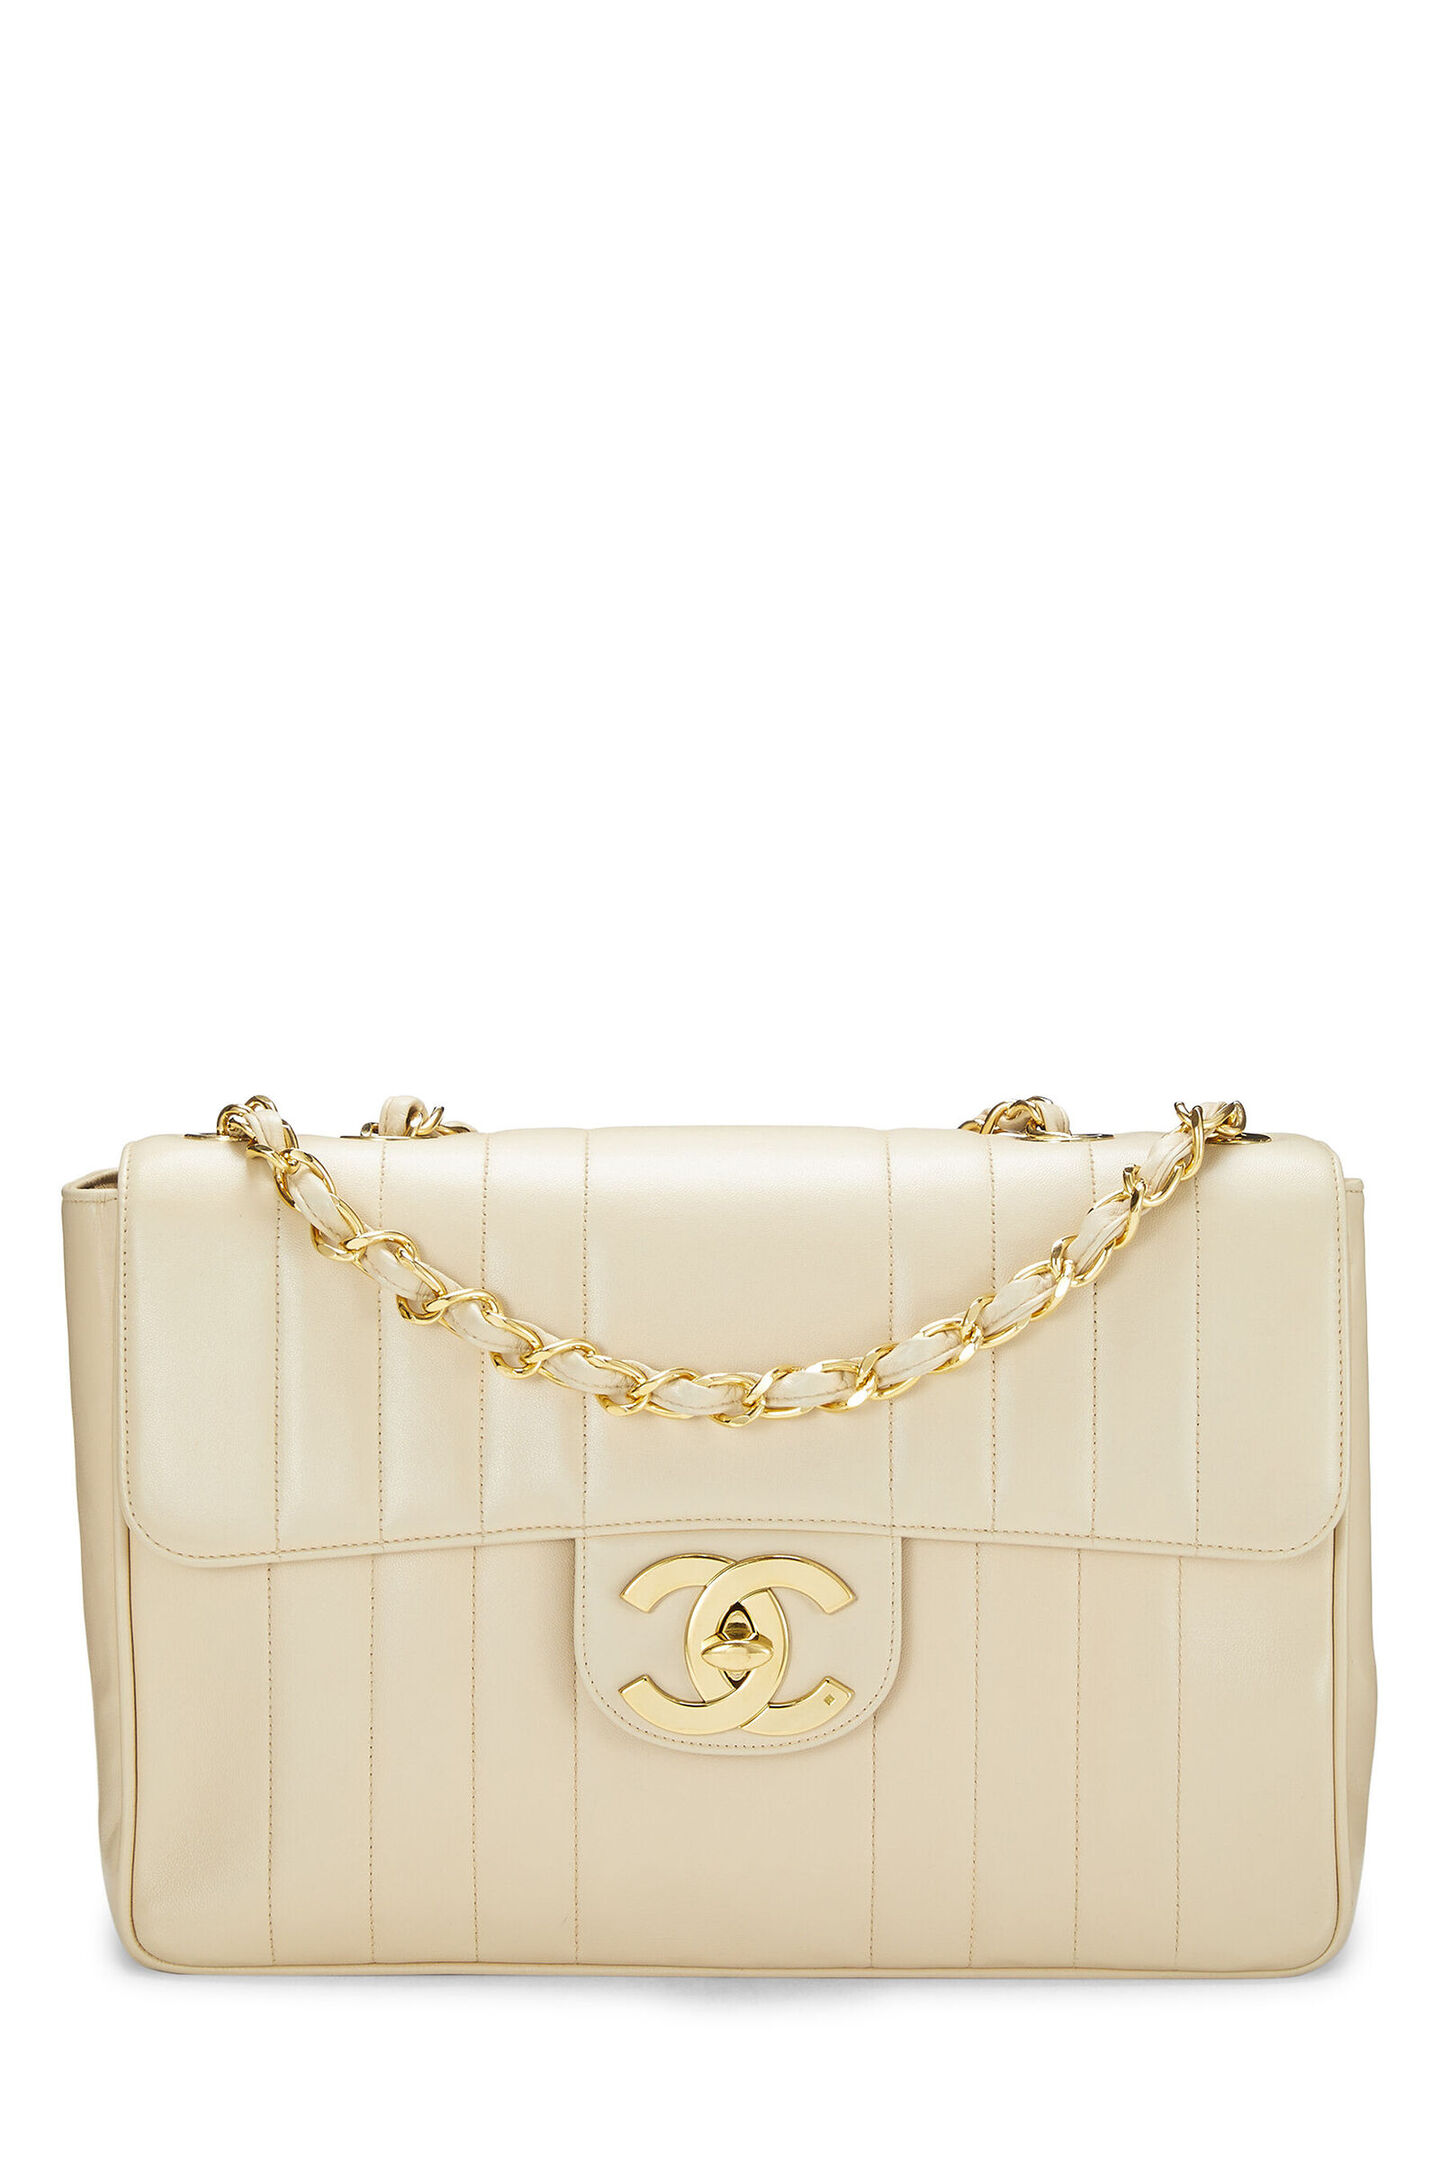 Designer Brand Bags Gucci LV Chanel YSL Fendi Hermes Prada Fashion